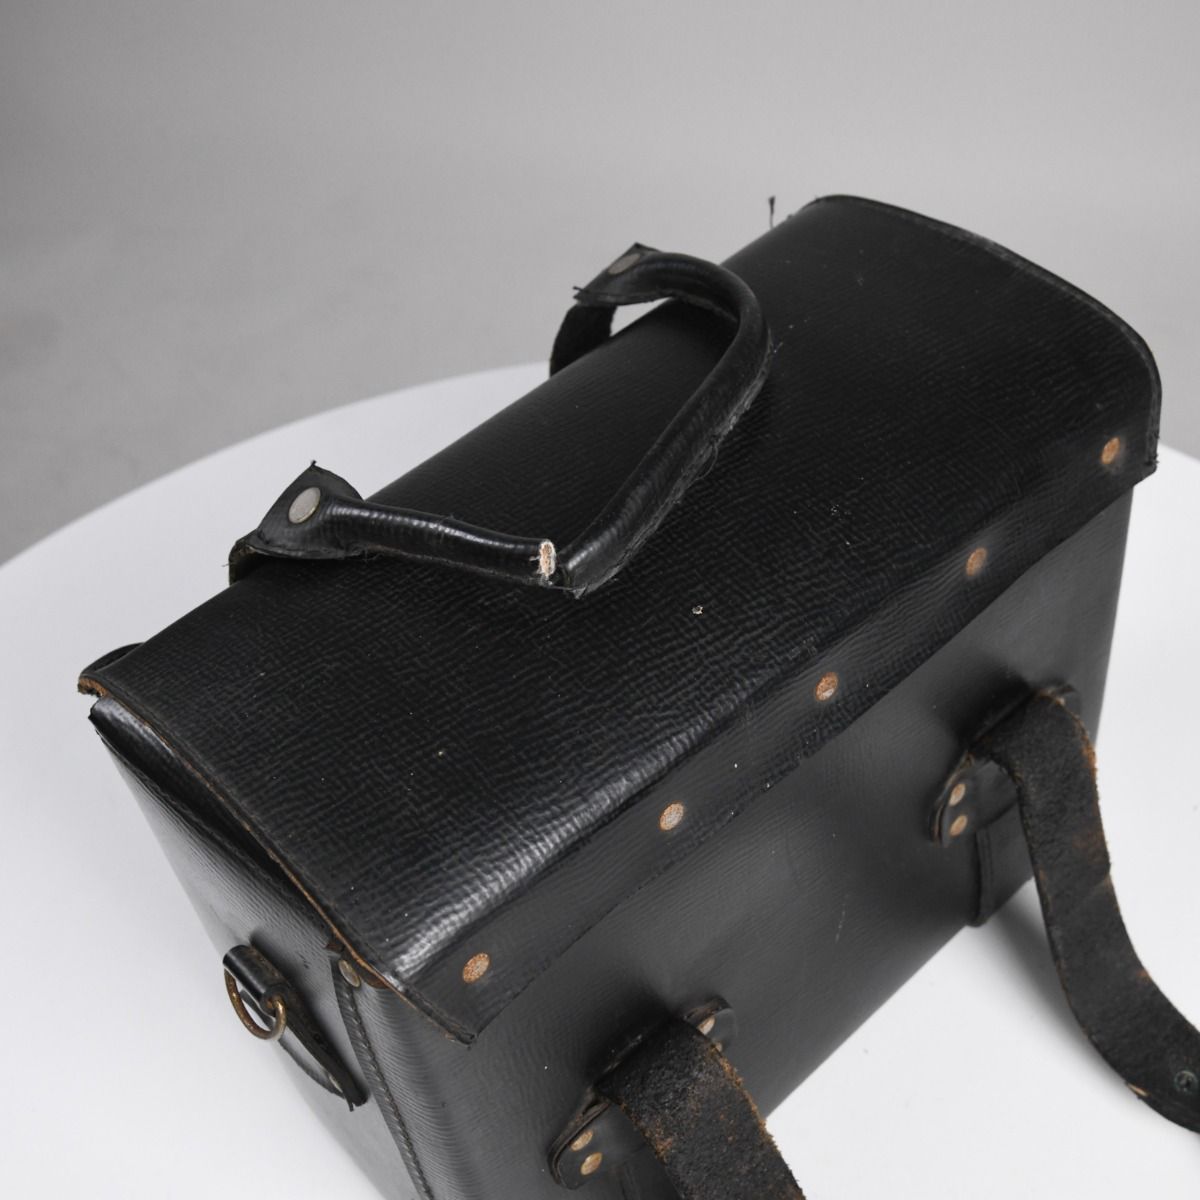 Vintage Homa Mid Century Rubberised Leather Tool Bag / Case